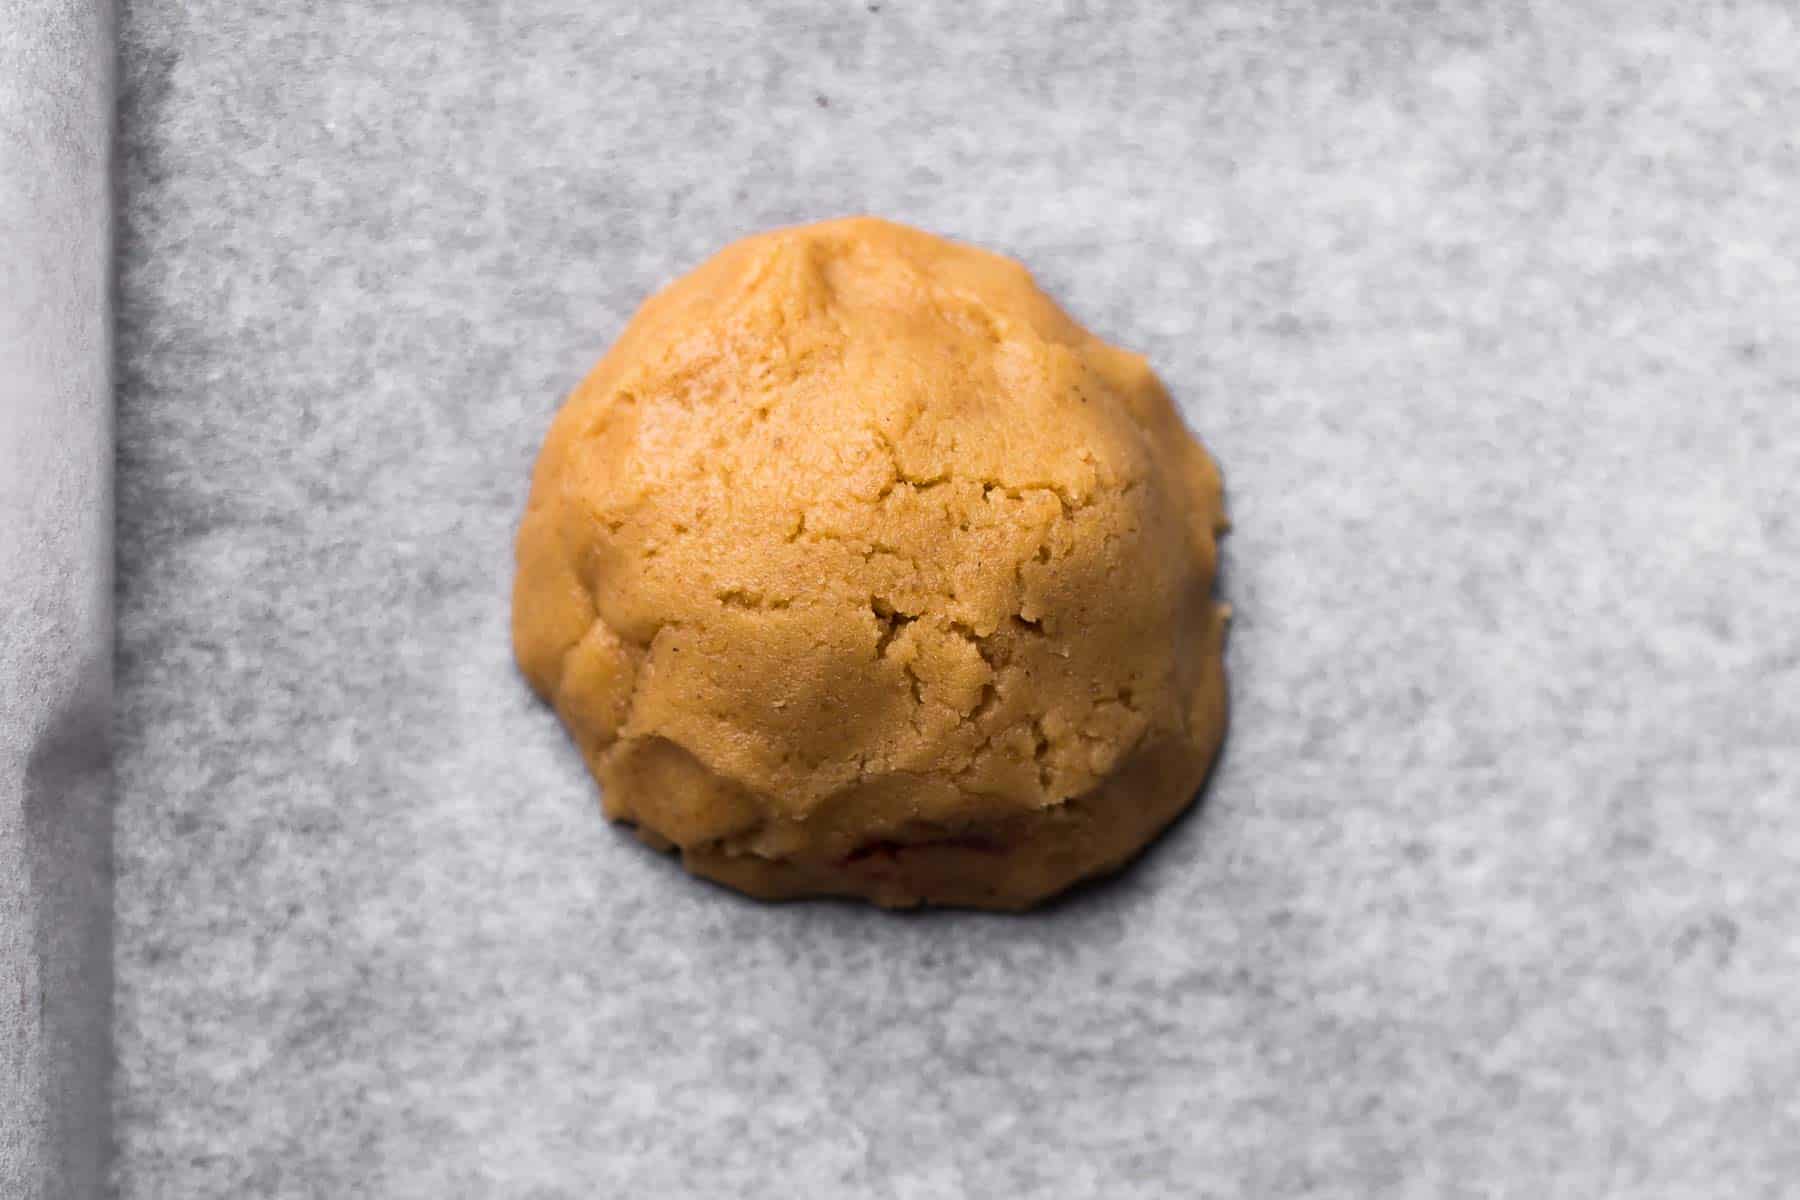 Peanut butter cookie dough on baking sheet